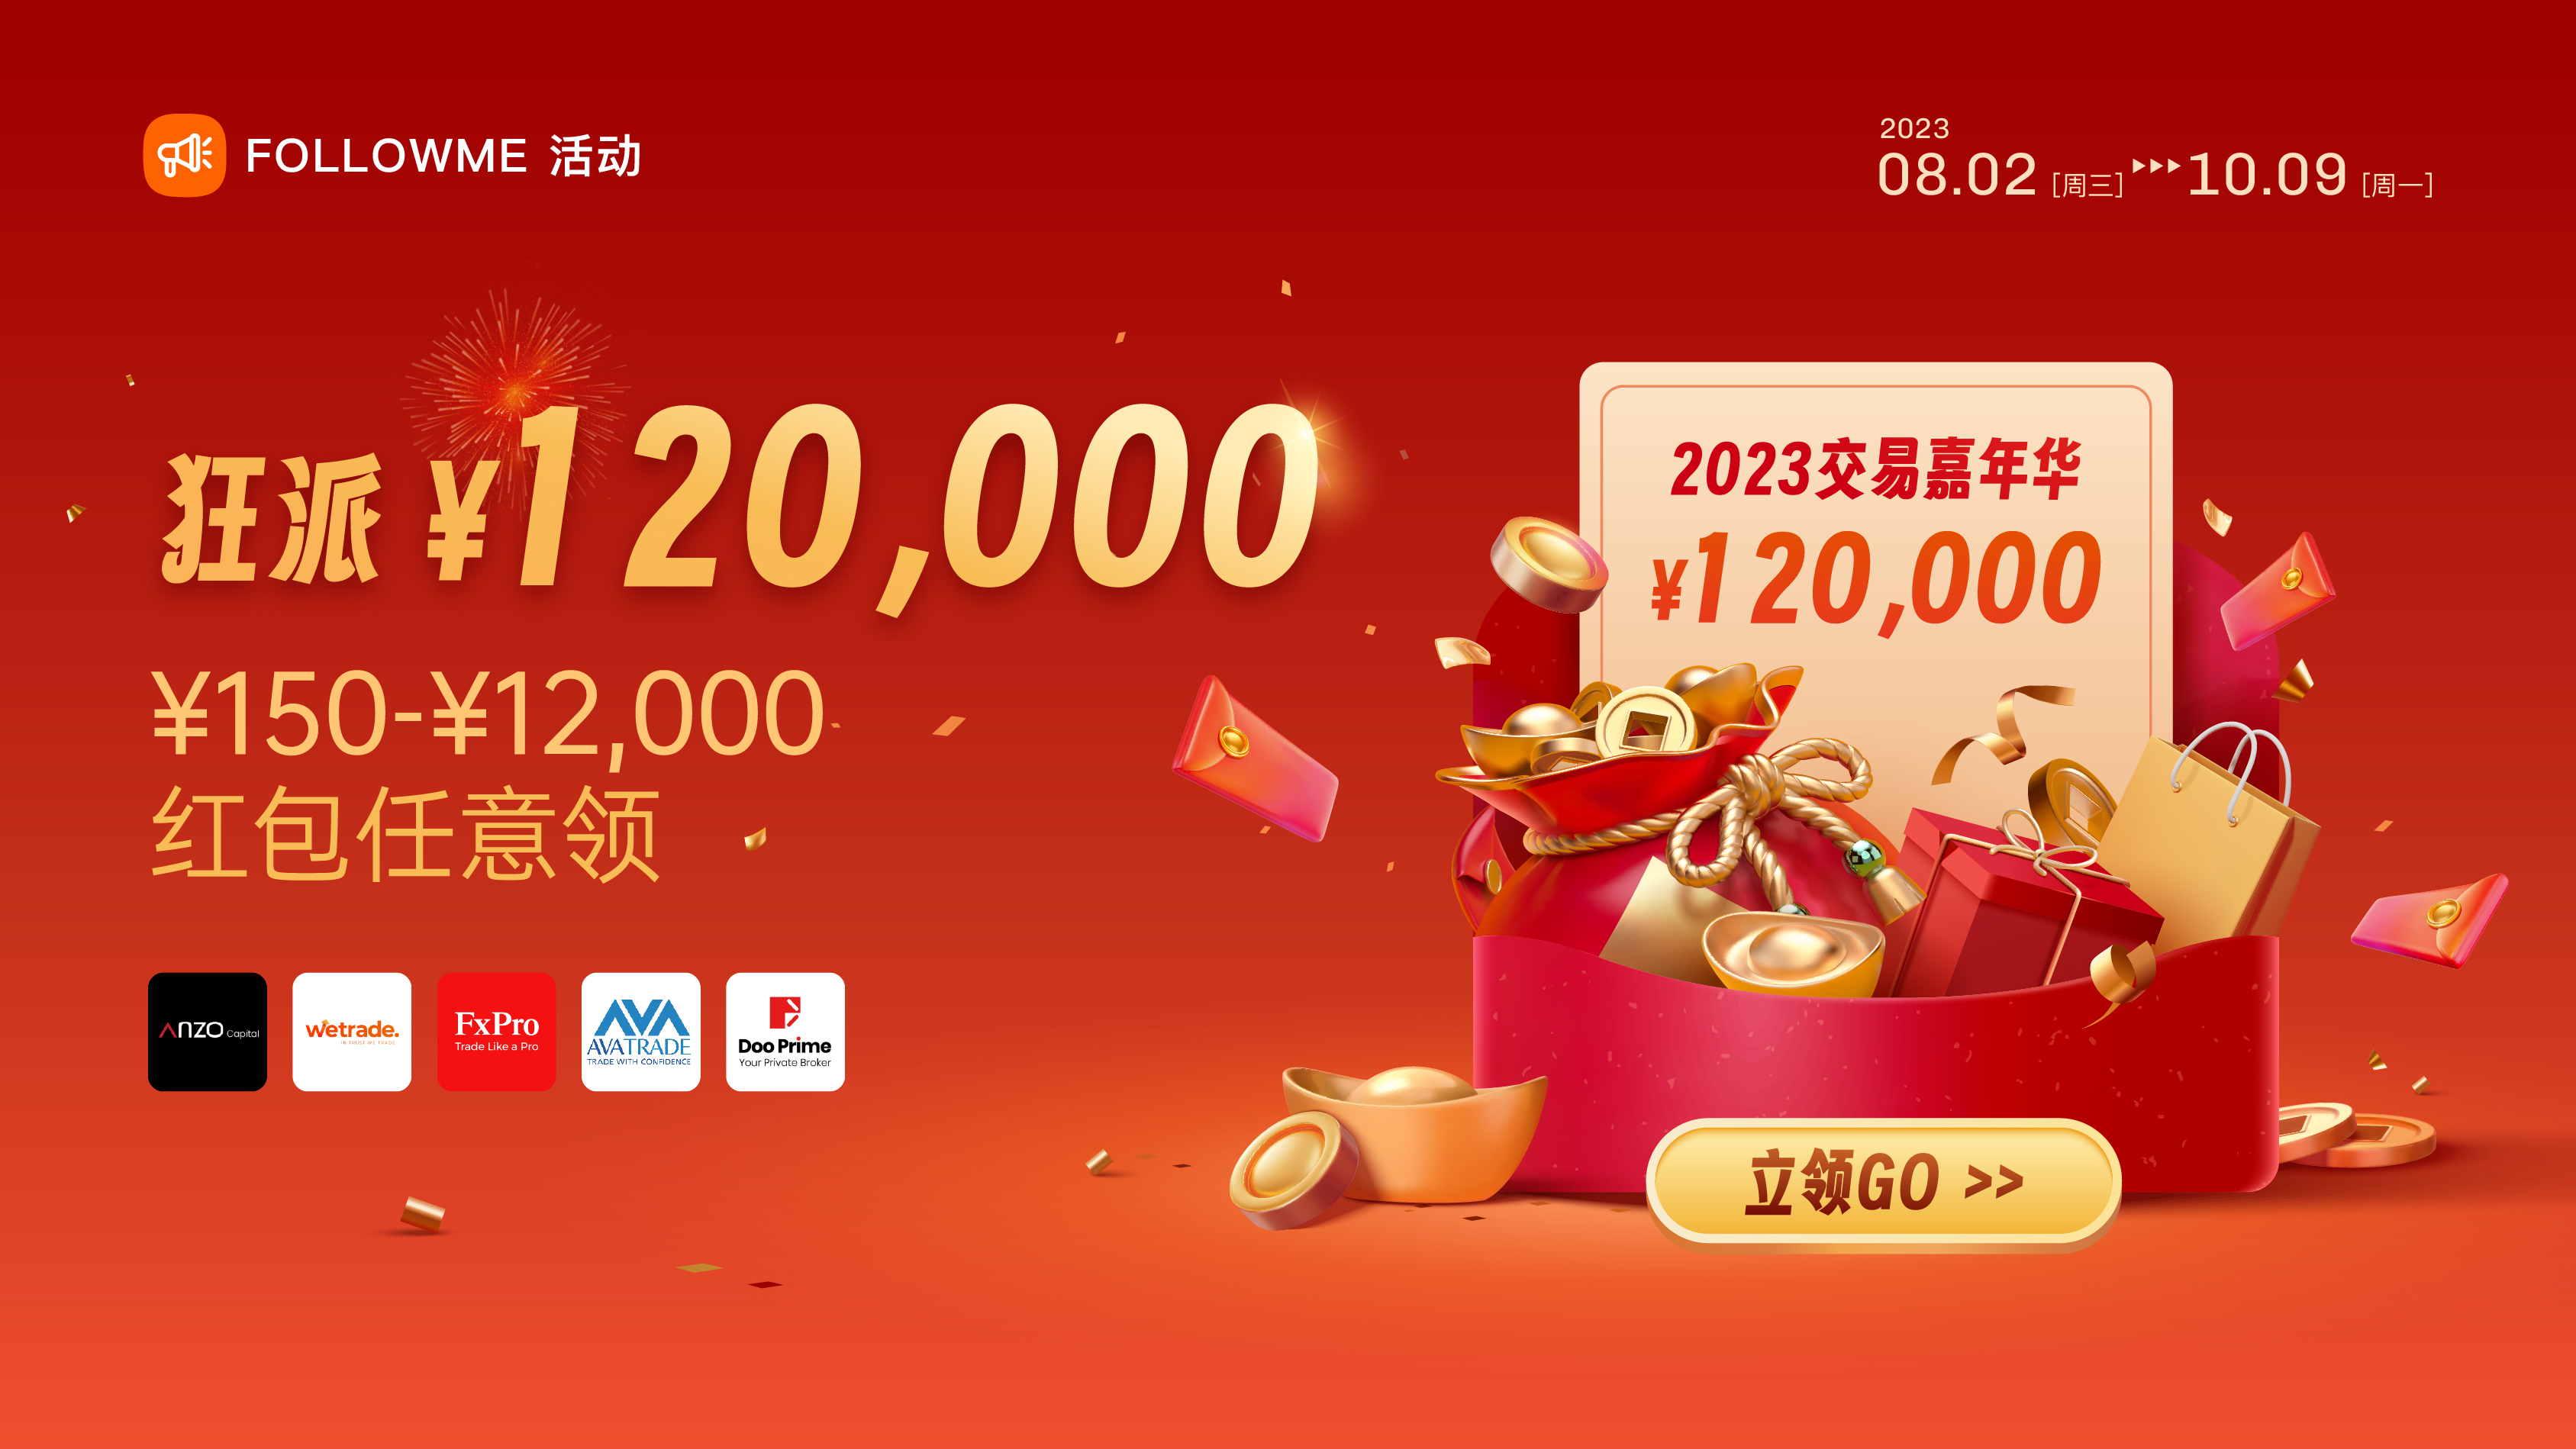 挑战不变奖金激增 150% ，单人最高可领  ¥12,000